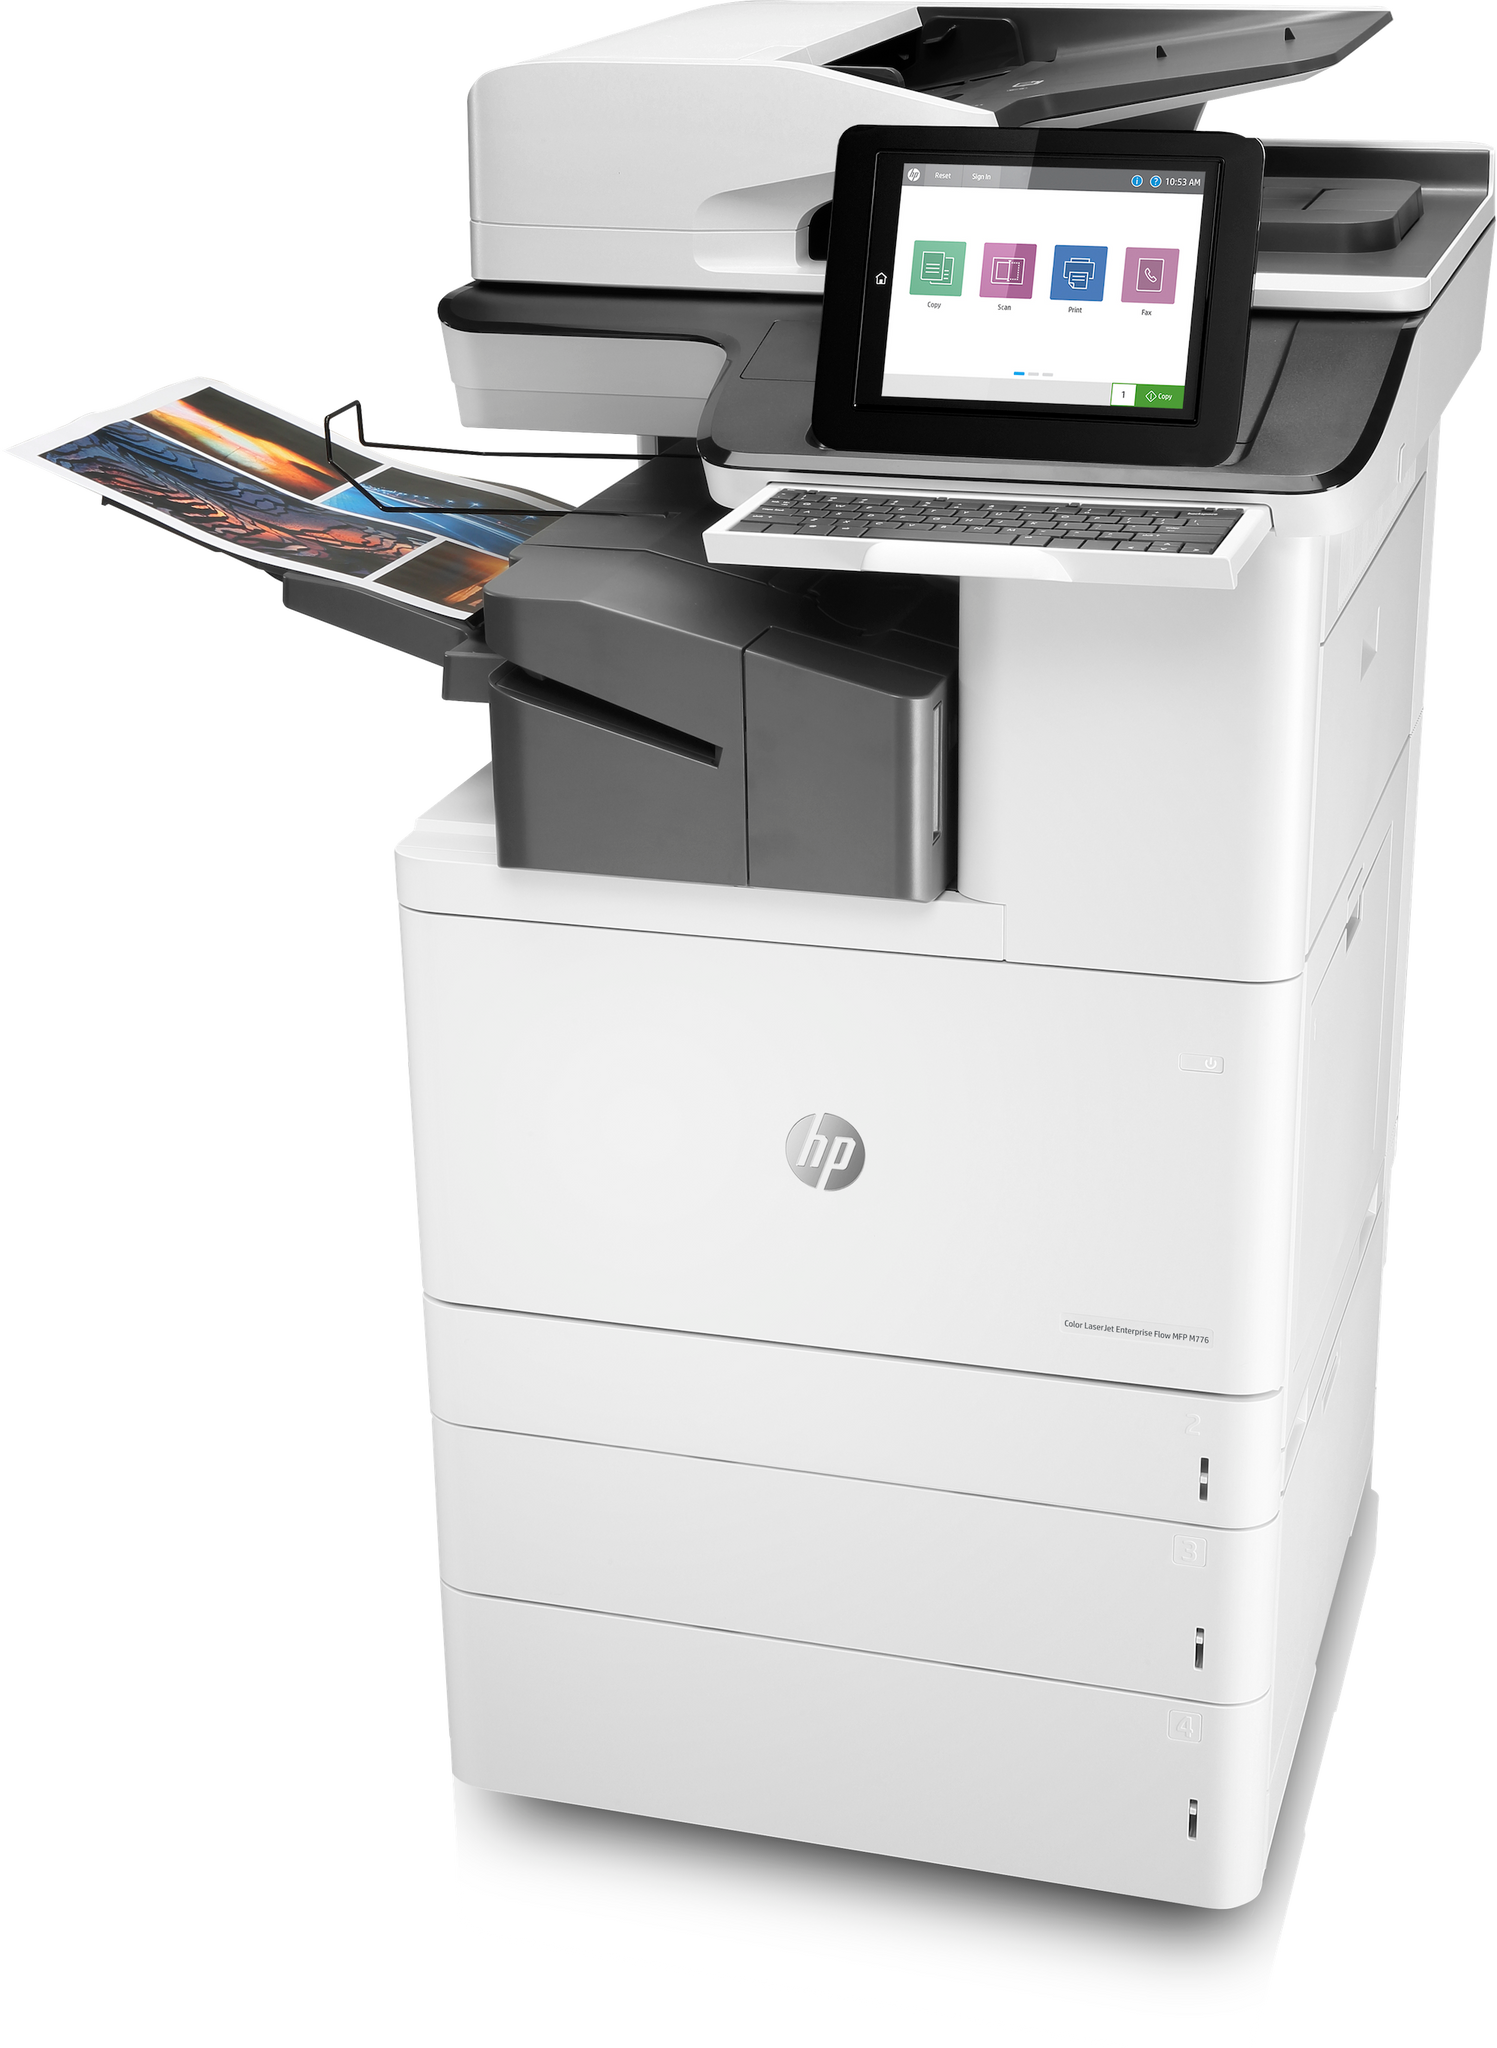 Impresora de copia técnica de la máquina de Ecuador